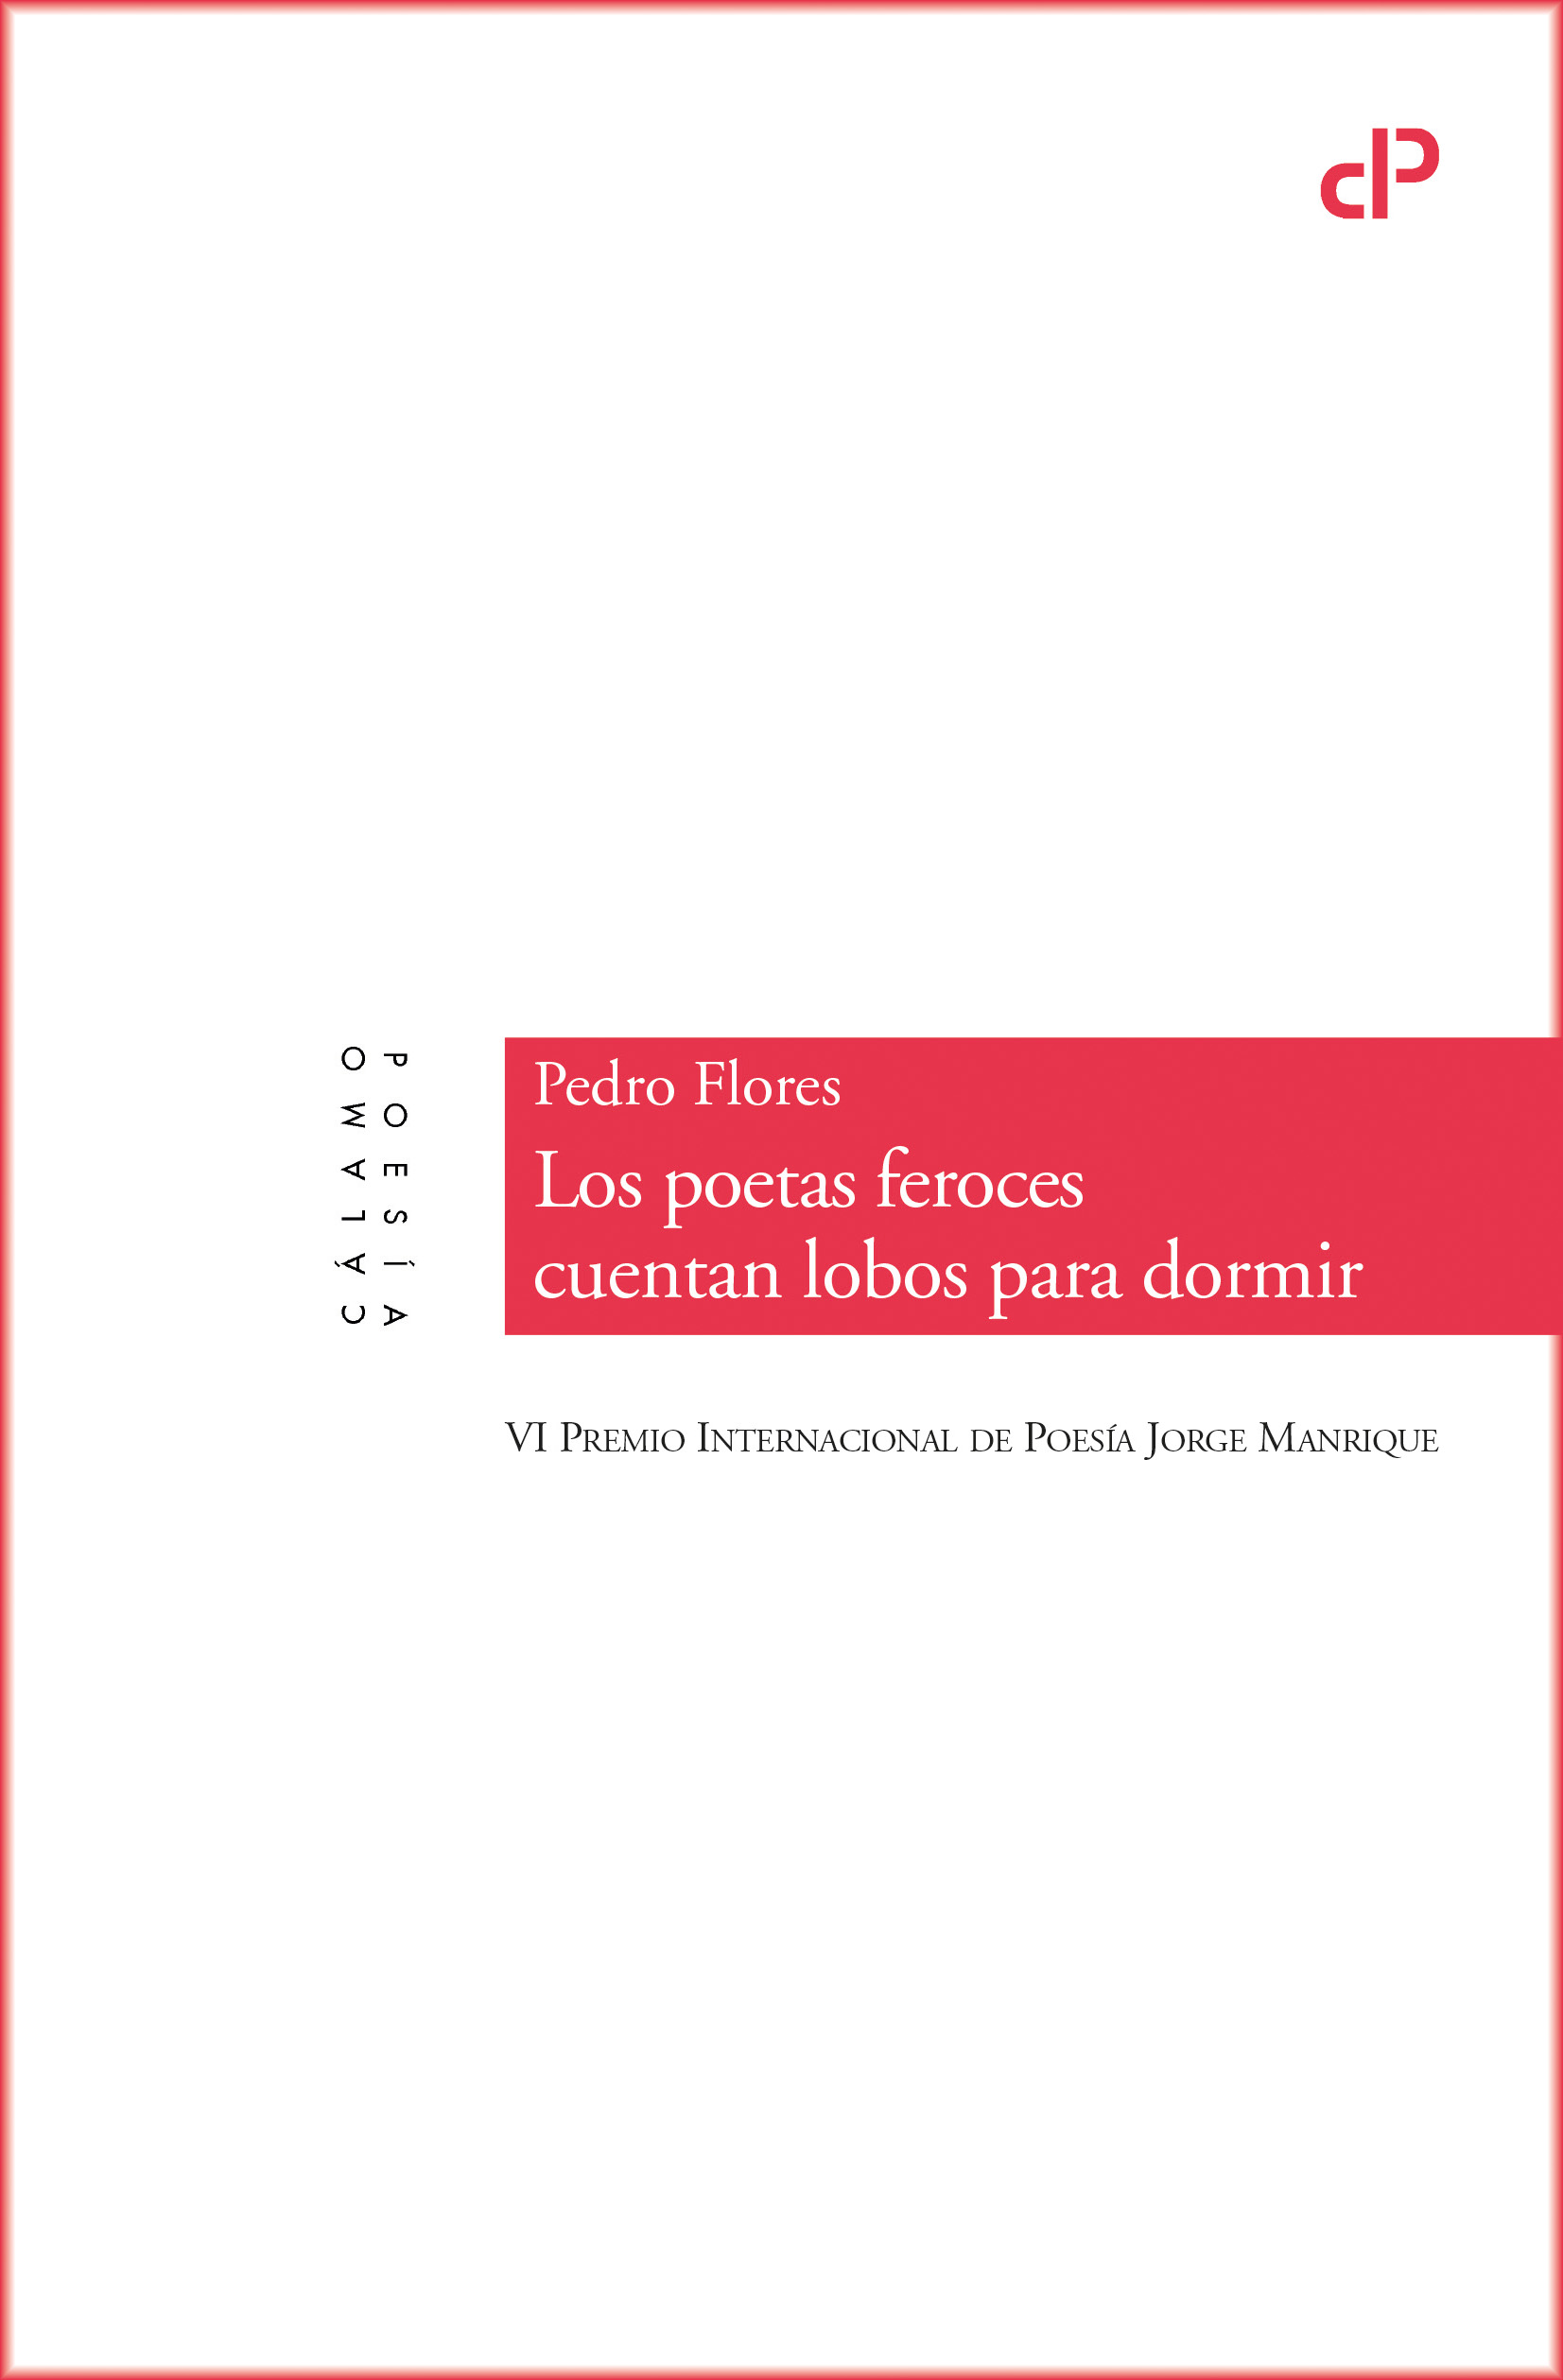 5 poemas de Los poetas feroces cuentan lobos para dormir, de Pedro Flores